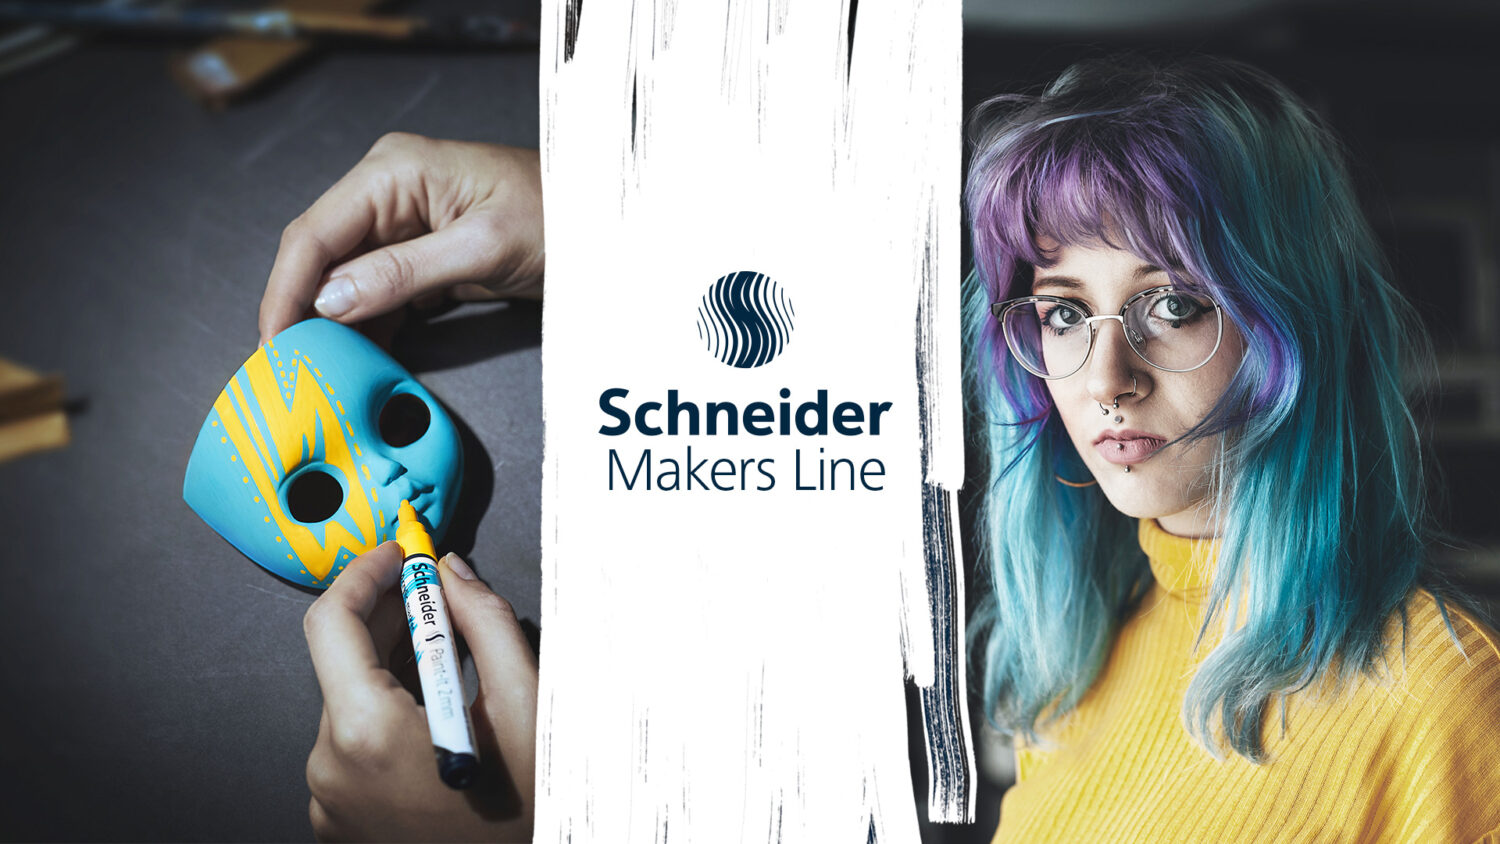 Schneider Makers Line - Brand development